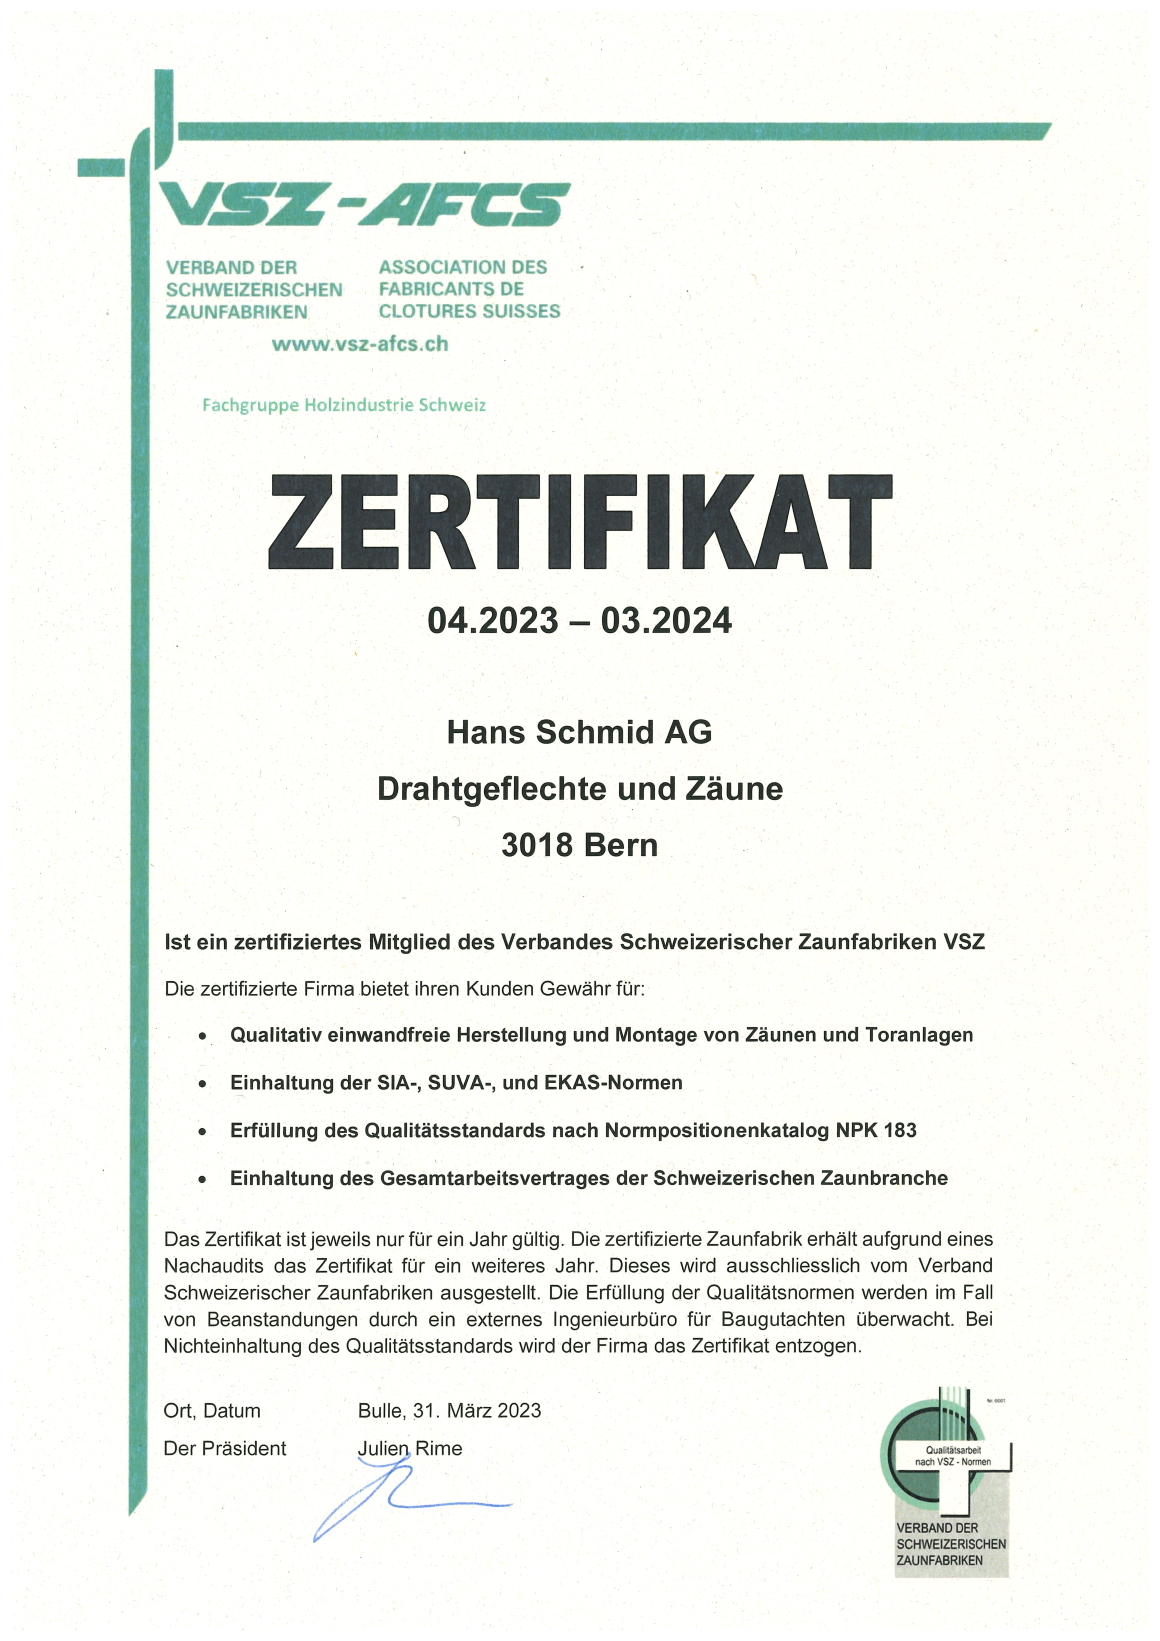 zertifikat-vsz-2023